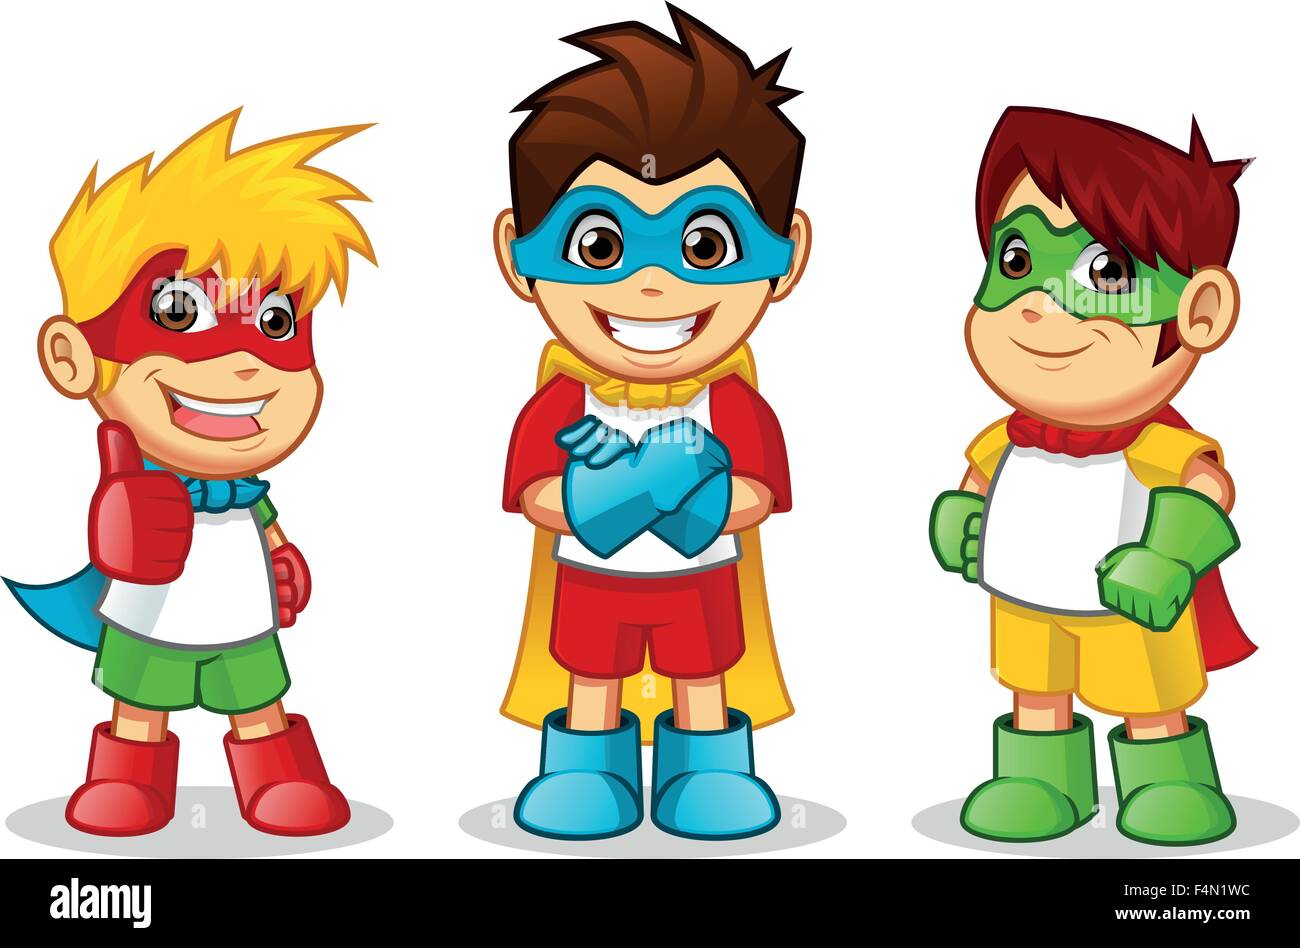 Alta calidad Kid super héroes de dibujos animados ilustración vectorial Ilustración del Vector